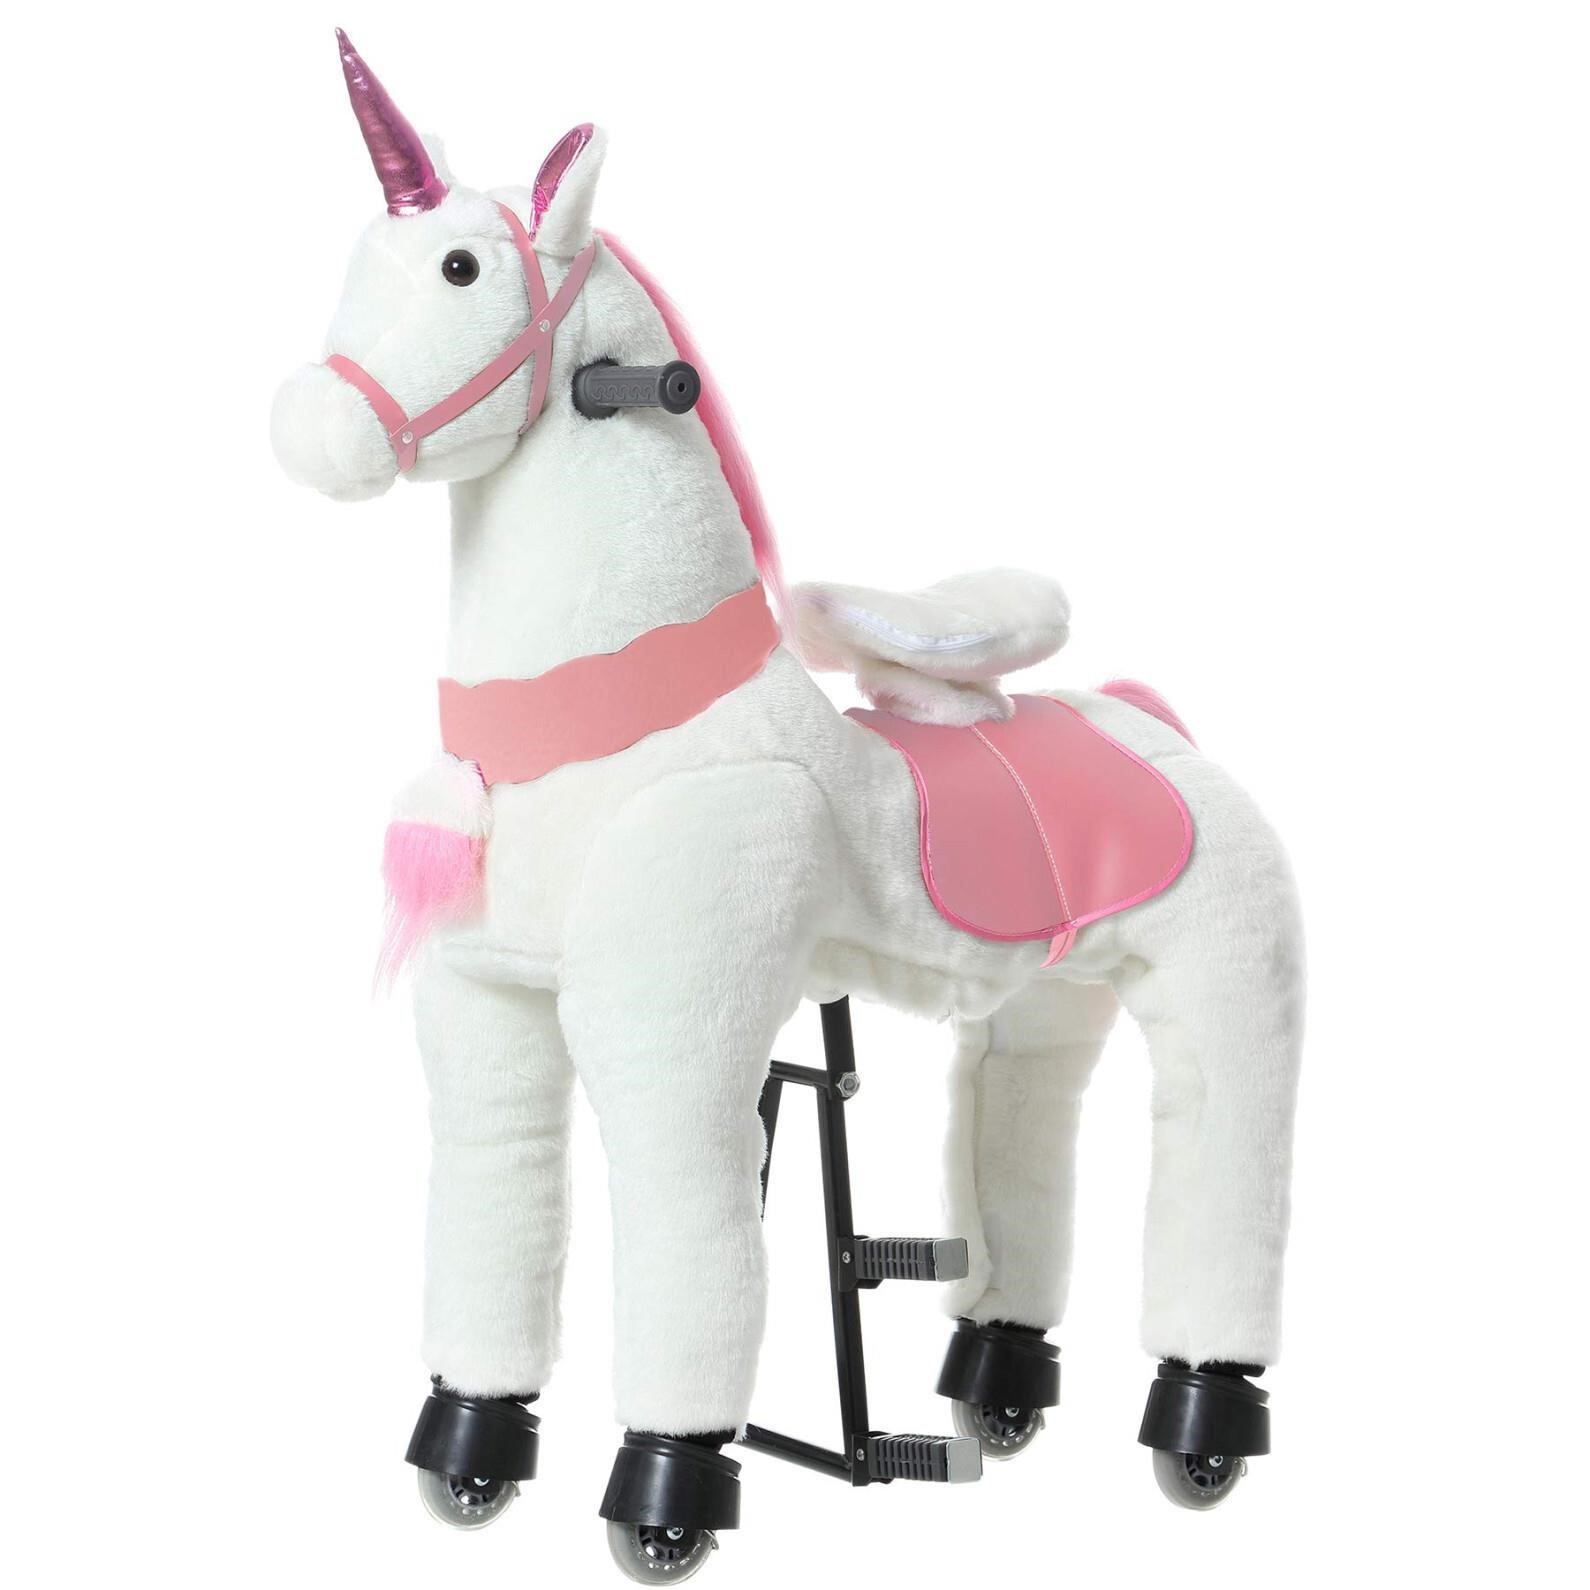 PONYEEHAW Ride on Unicorn Toys, Kids Riding Unicor